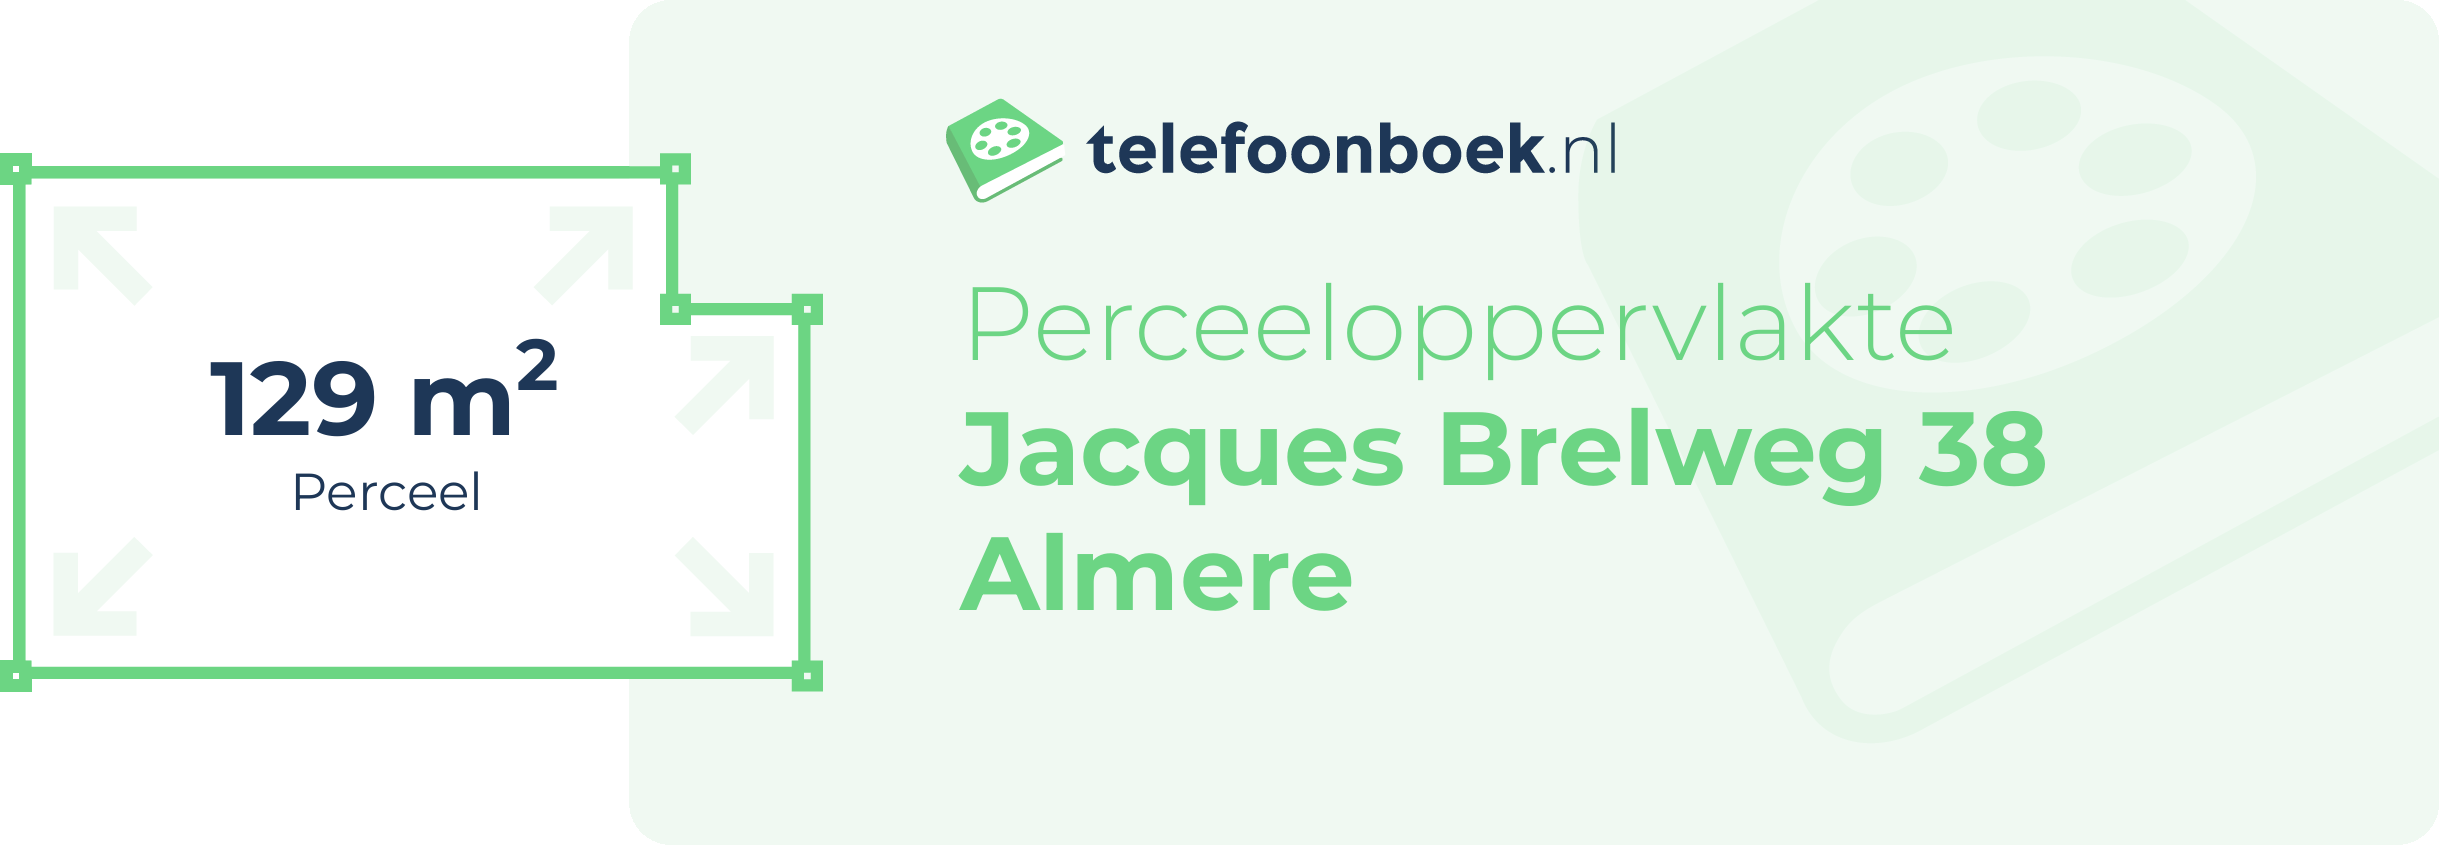 Perceeloppervlakte Jacques Brelweg 38 Almere